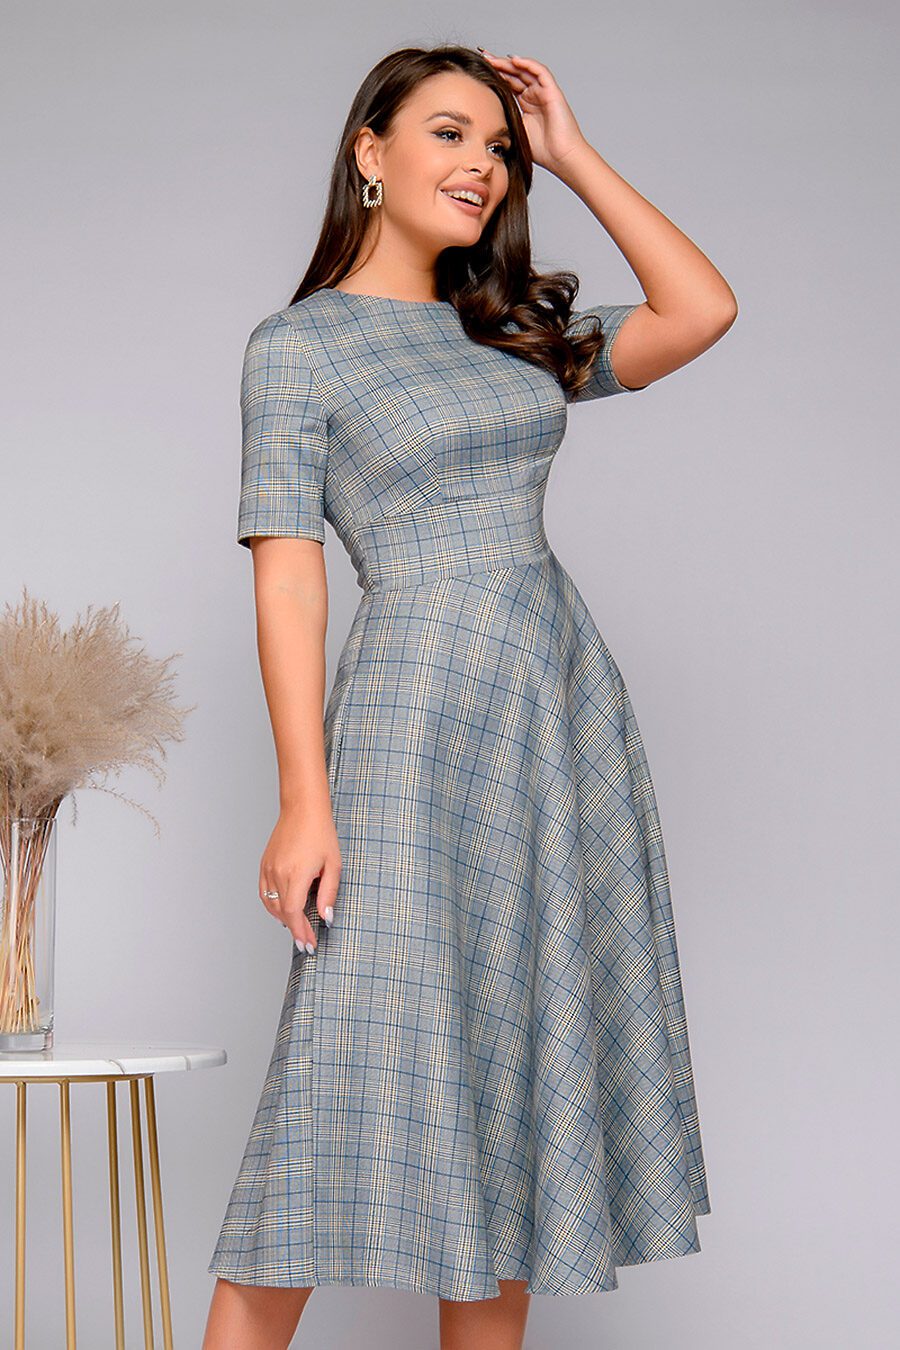 Платье для женщин 1001 DRESS 741838 купить оптом от производителя. Совместная покупка женской одежды в OptMoyo